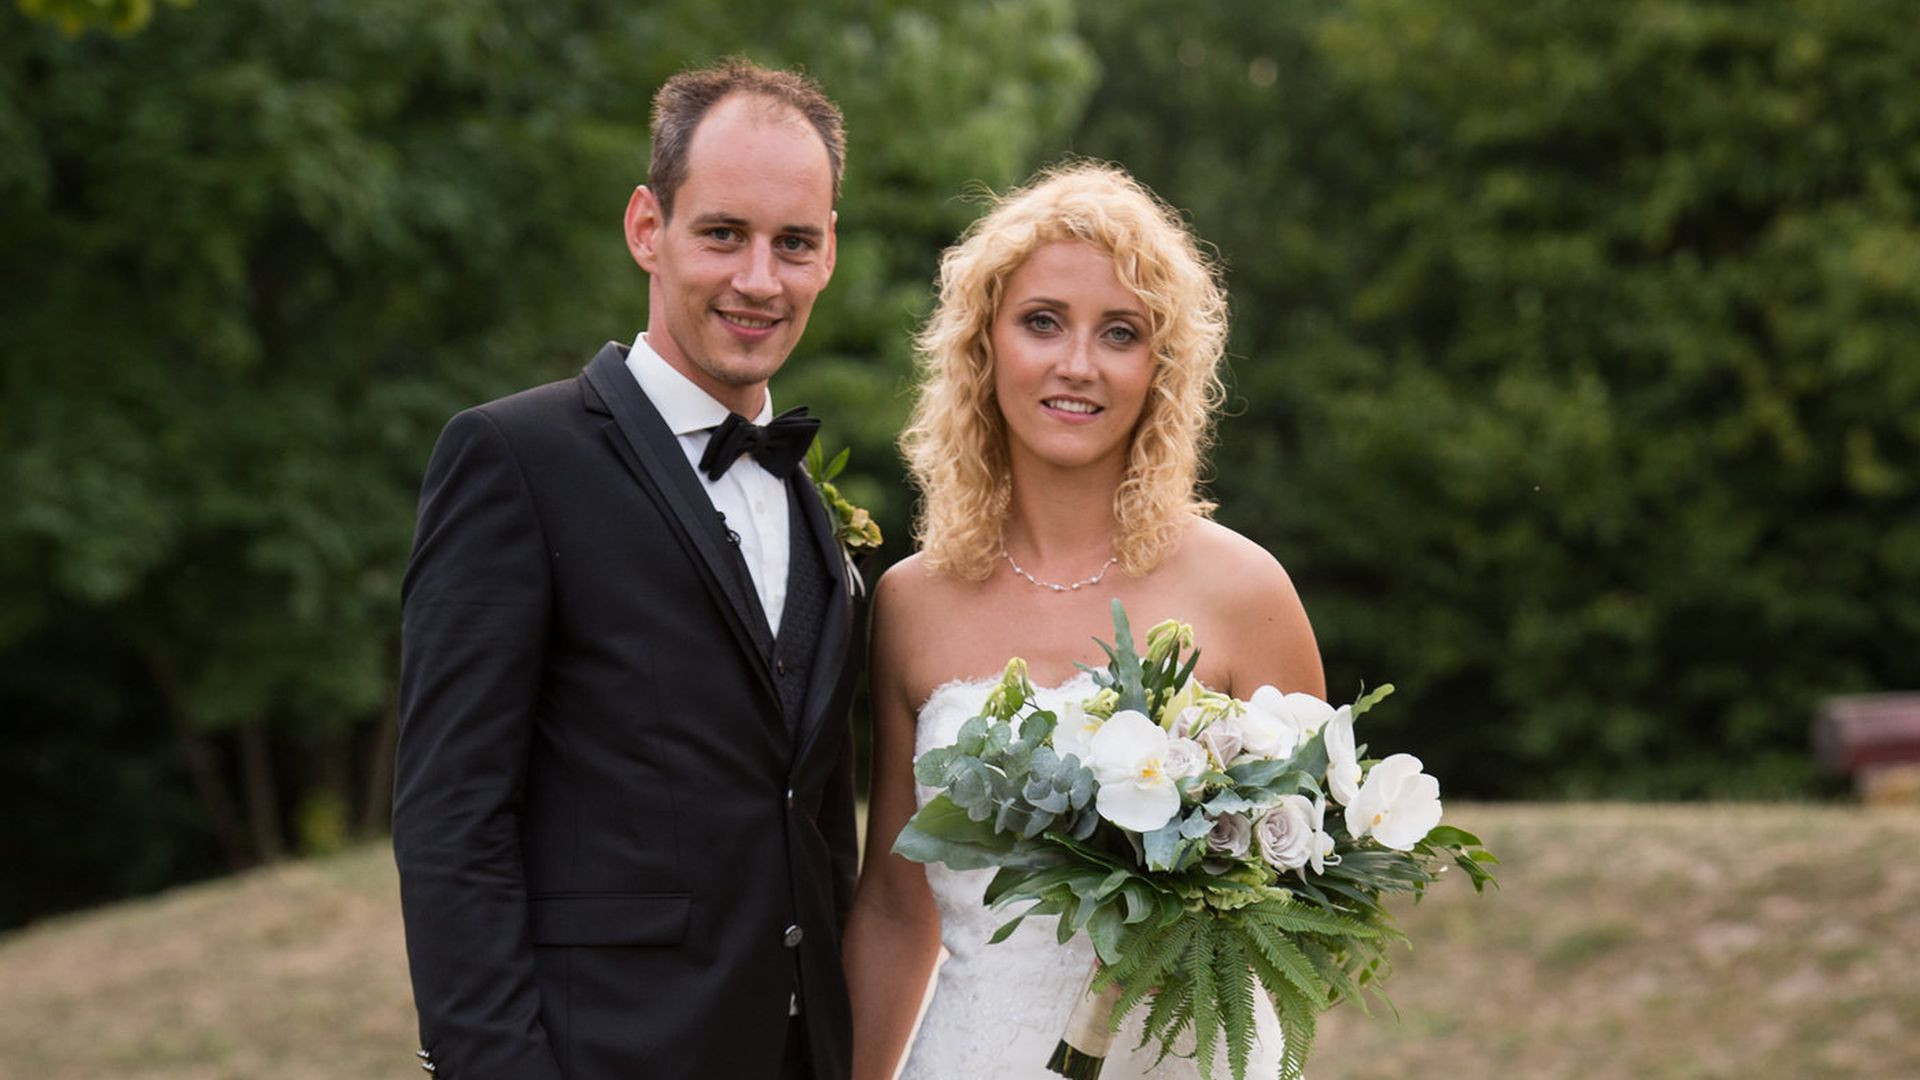 Hochzeit Auf Dem Ersten Blick
 Honeymoon Zwischenfall Krise bei HadeB Selina und Steve